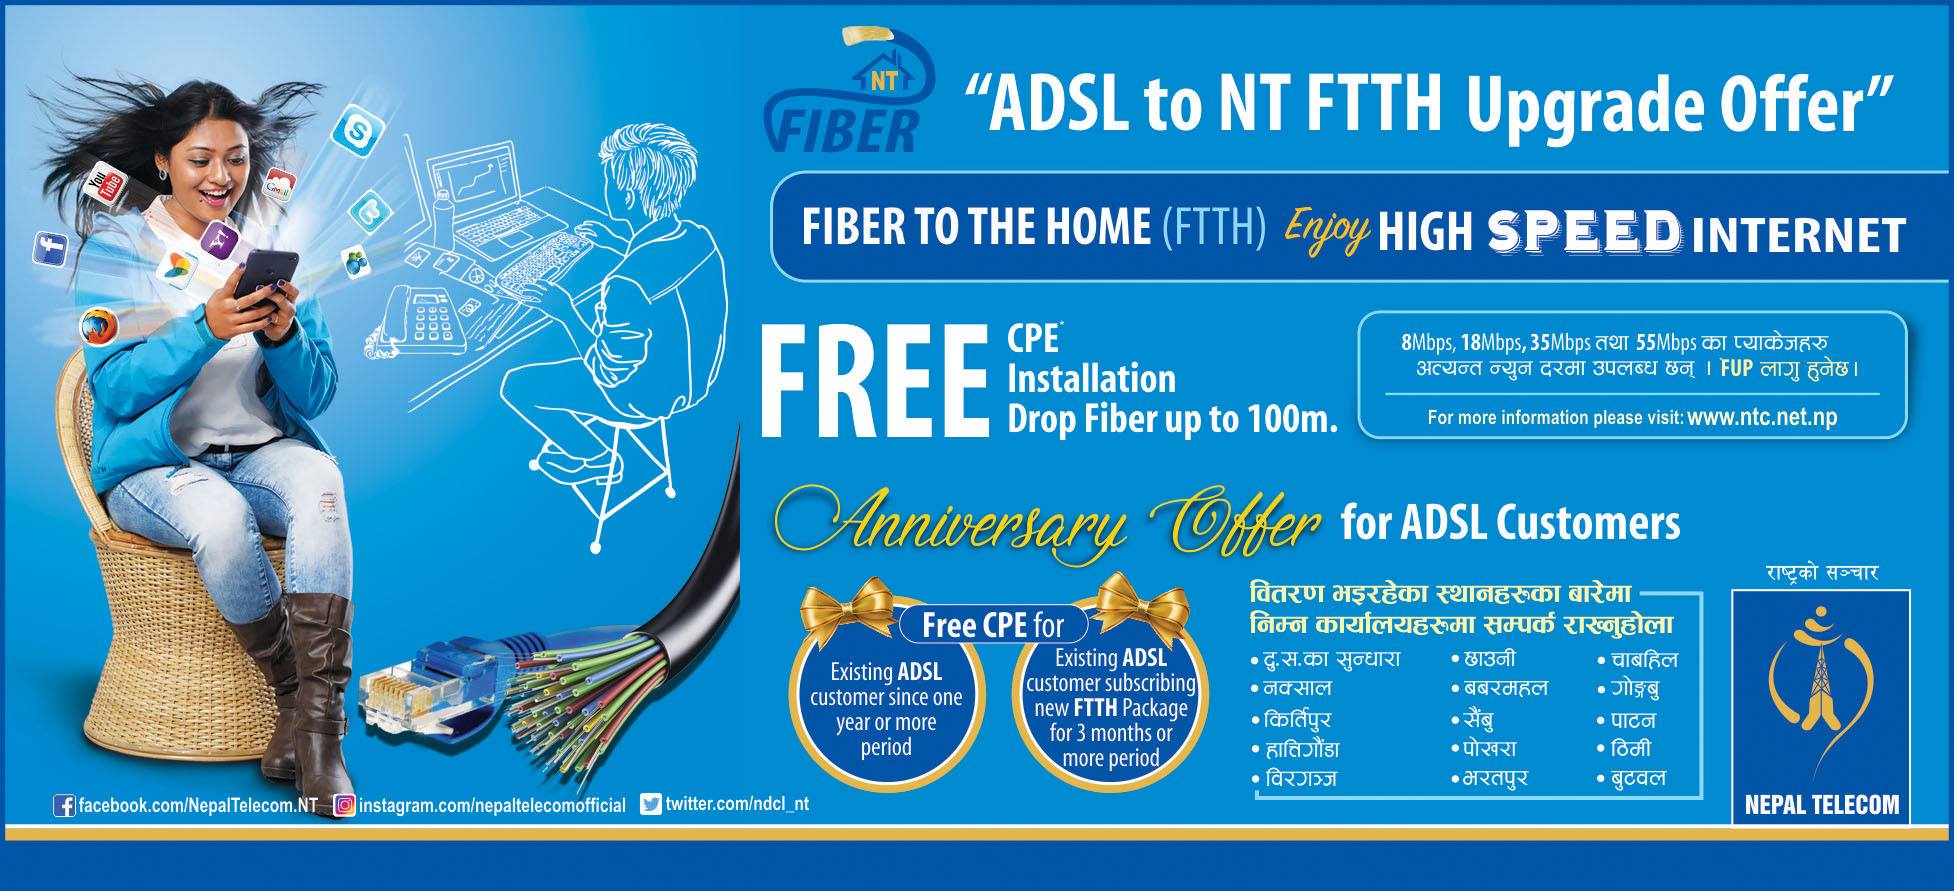 nepal telecom adsl fiber internet